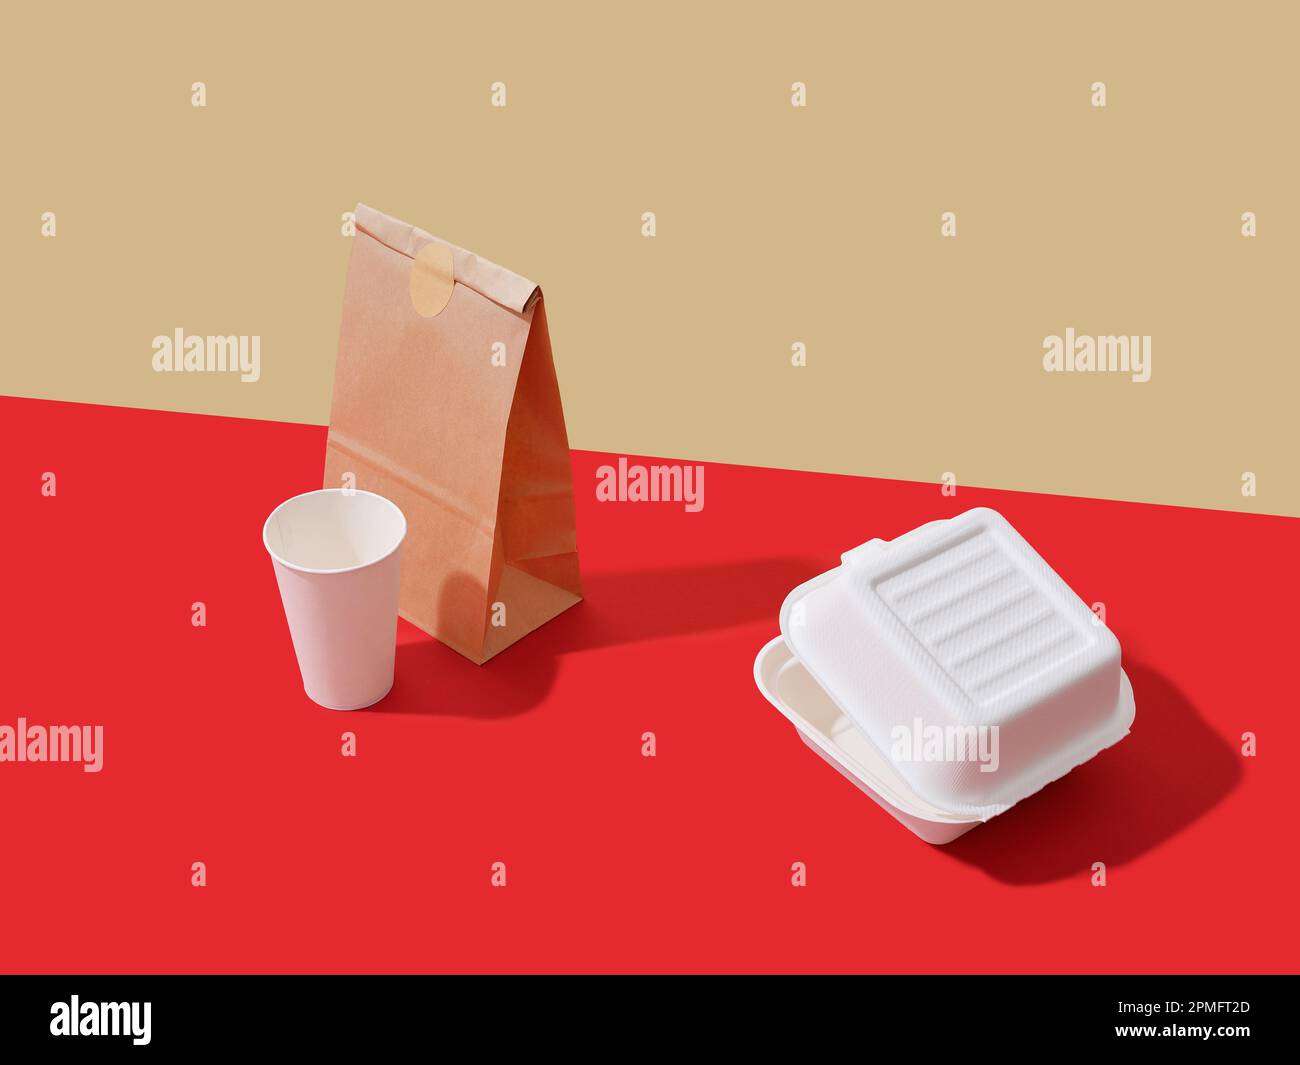 Emballage des aliments à emporter : boîtes et récipients sur fond coloré avec espace de texte. Concept minimaliste Banque D'Images